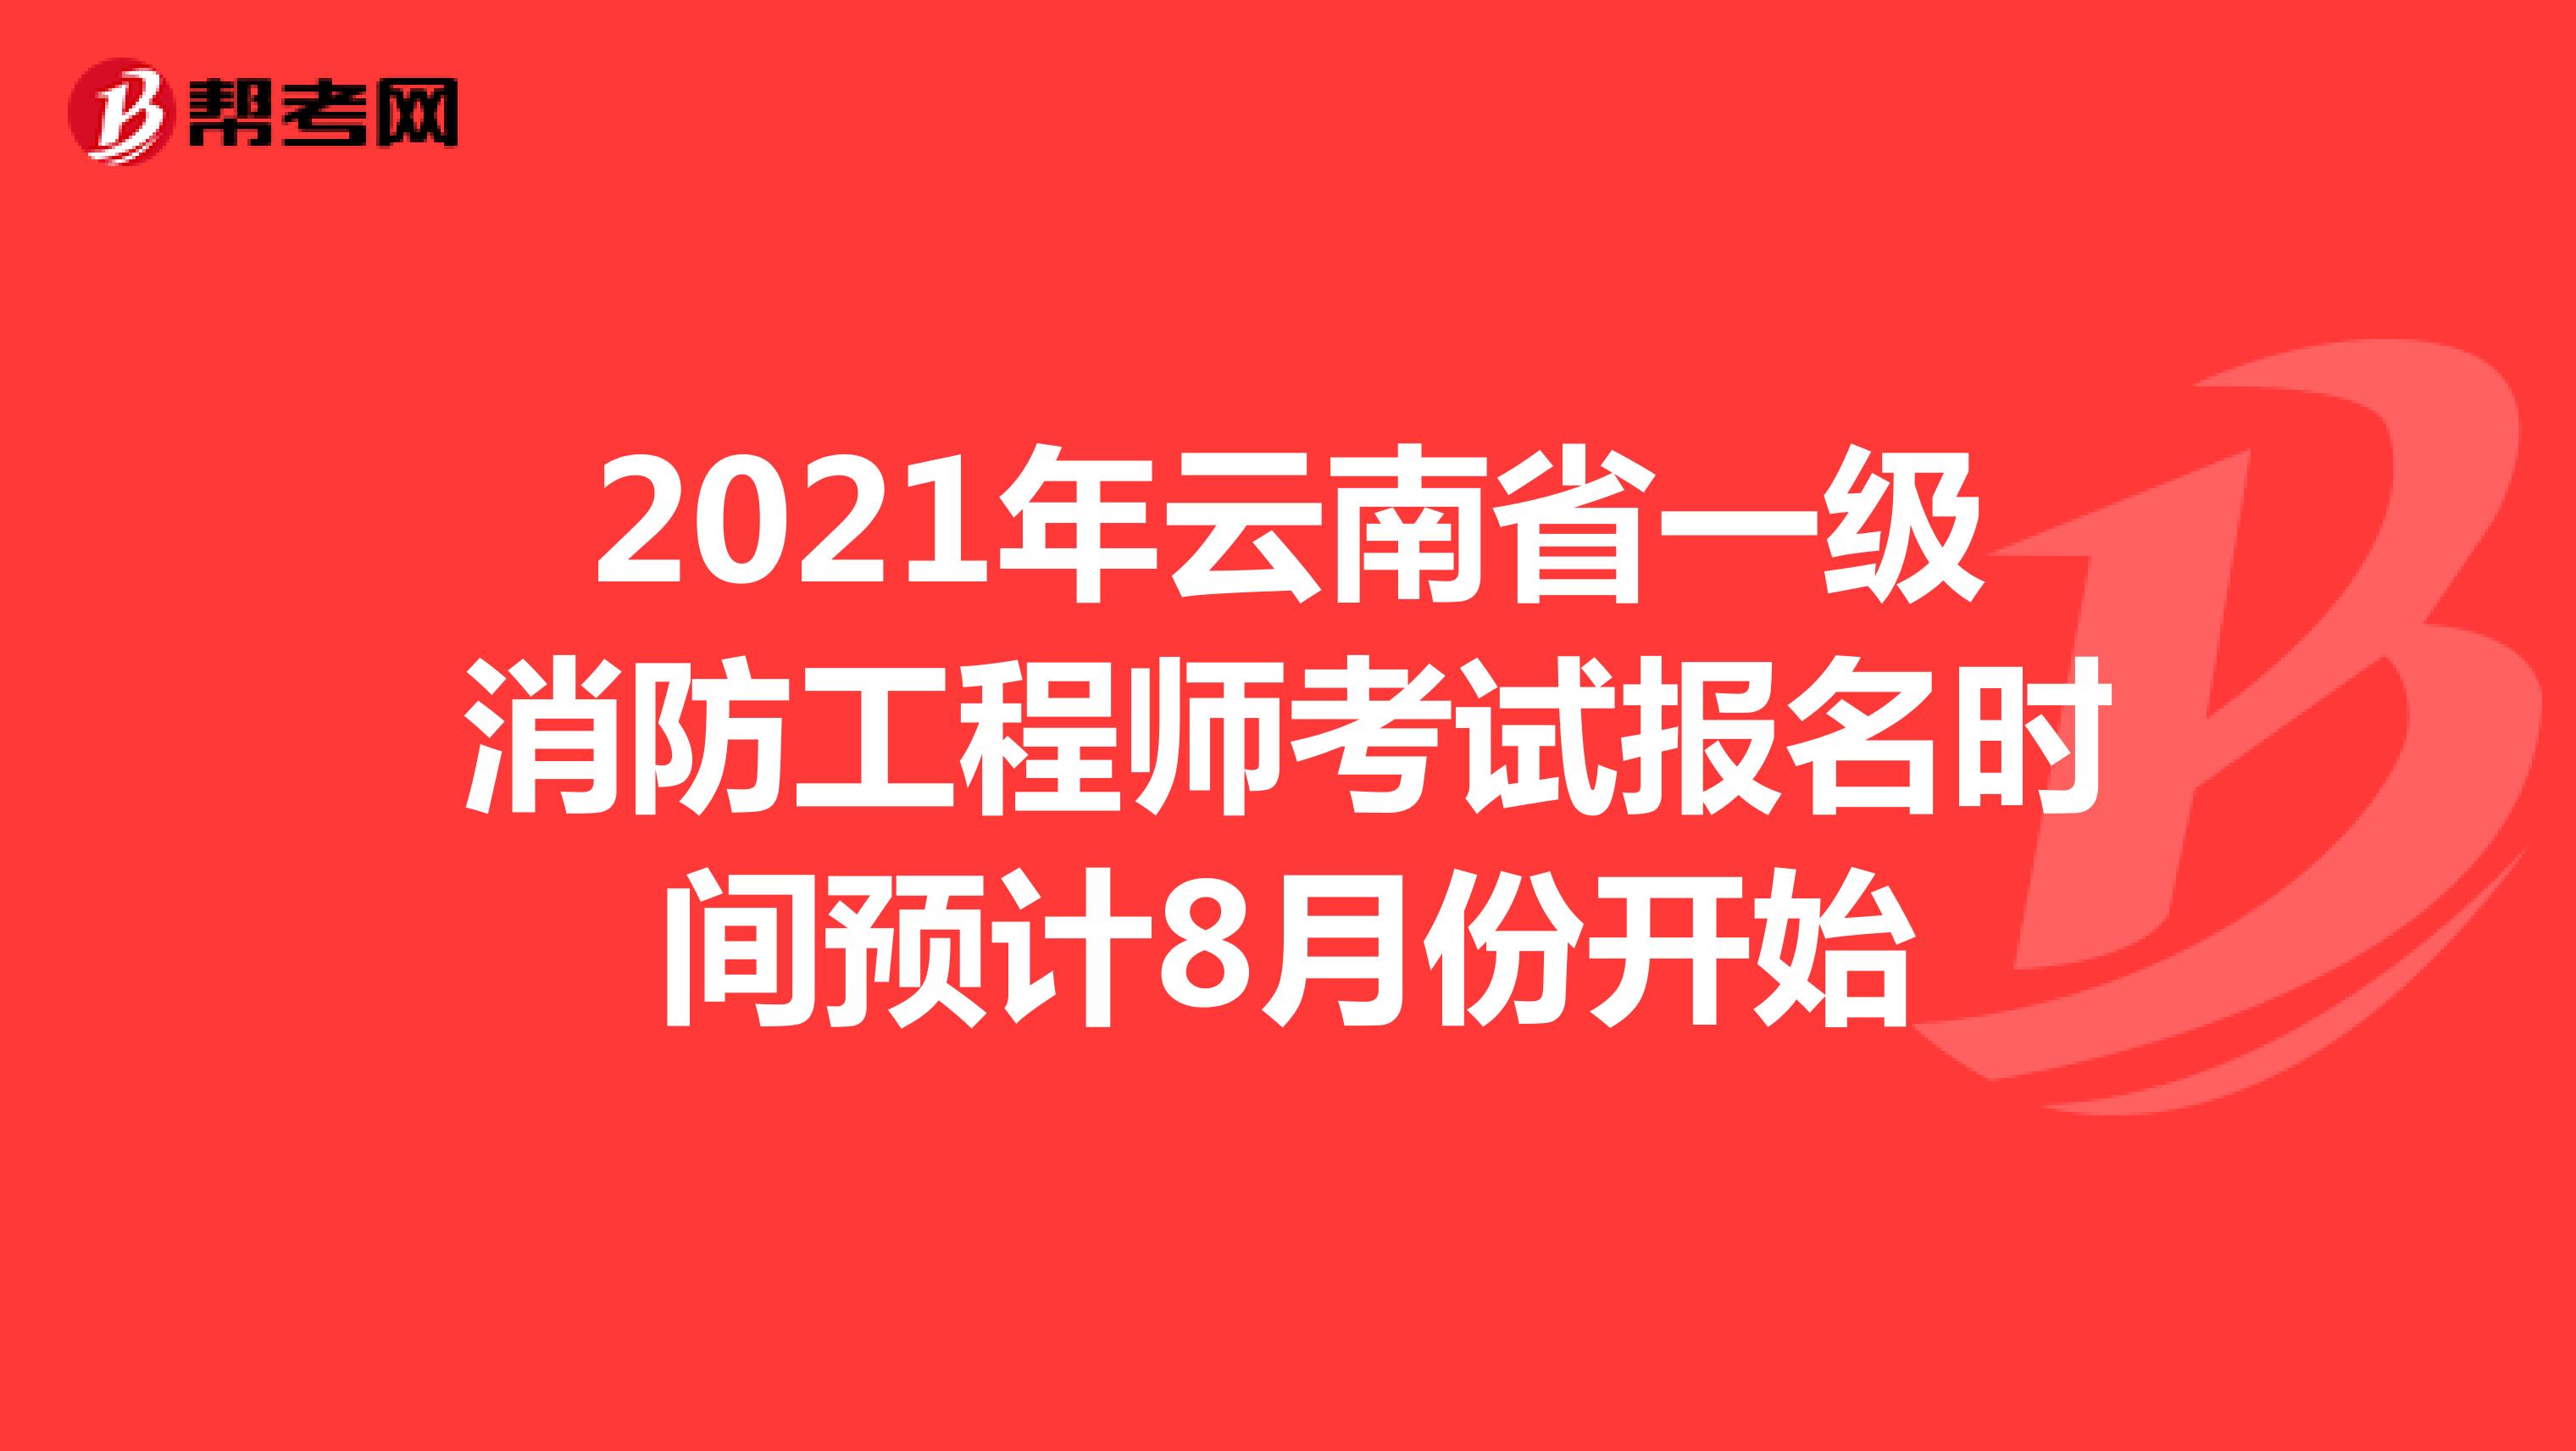 2021年云南省一级消防工程师考试报名时间预计8月份开始